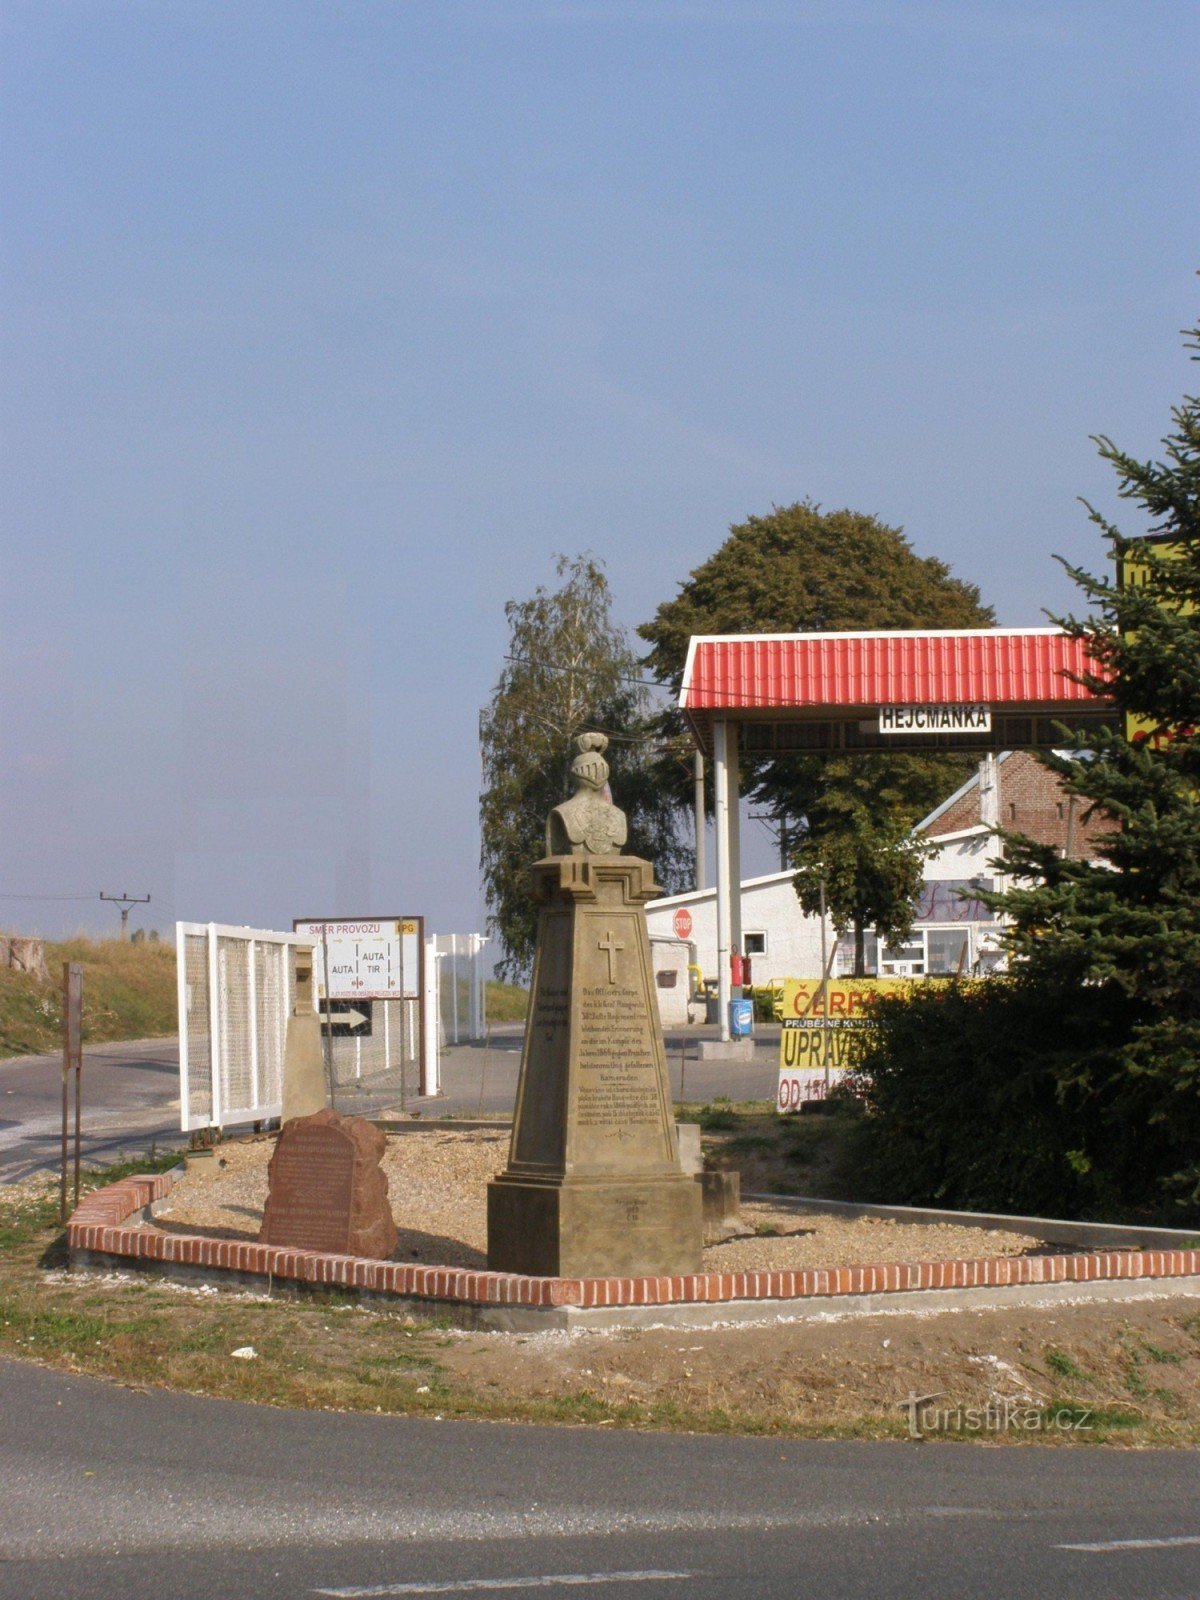 Rózběřice - Hejcmanka - spomenici bitke 1866